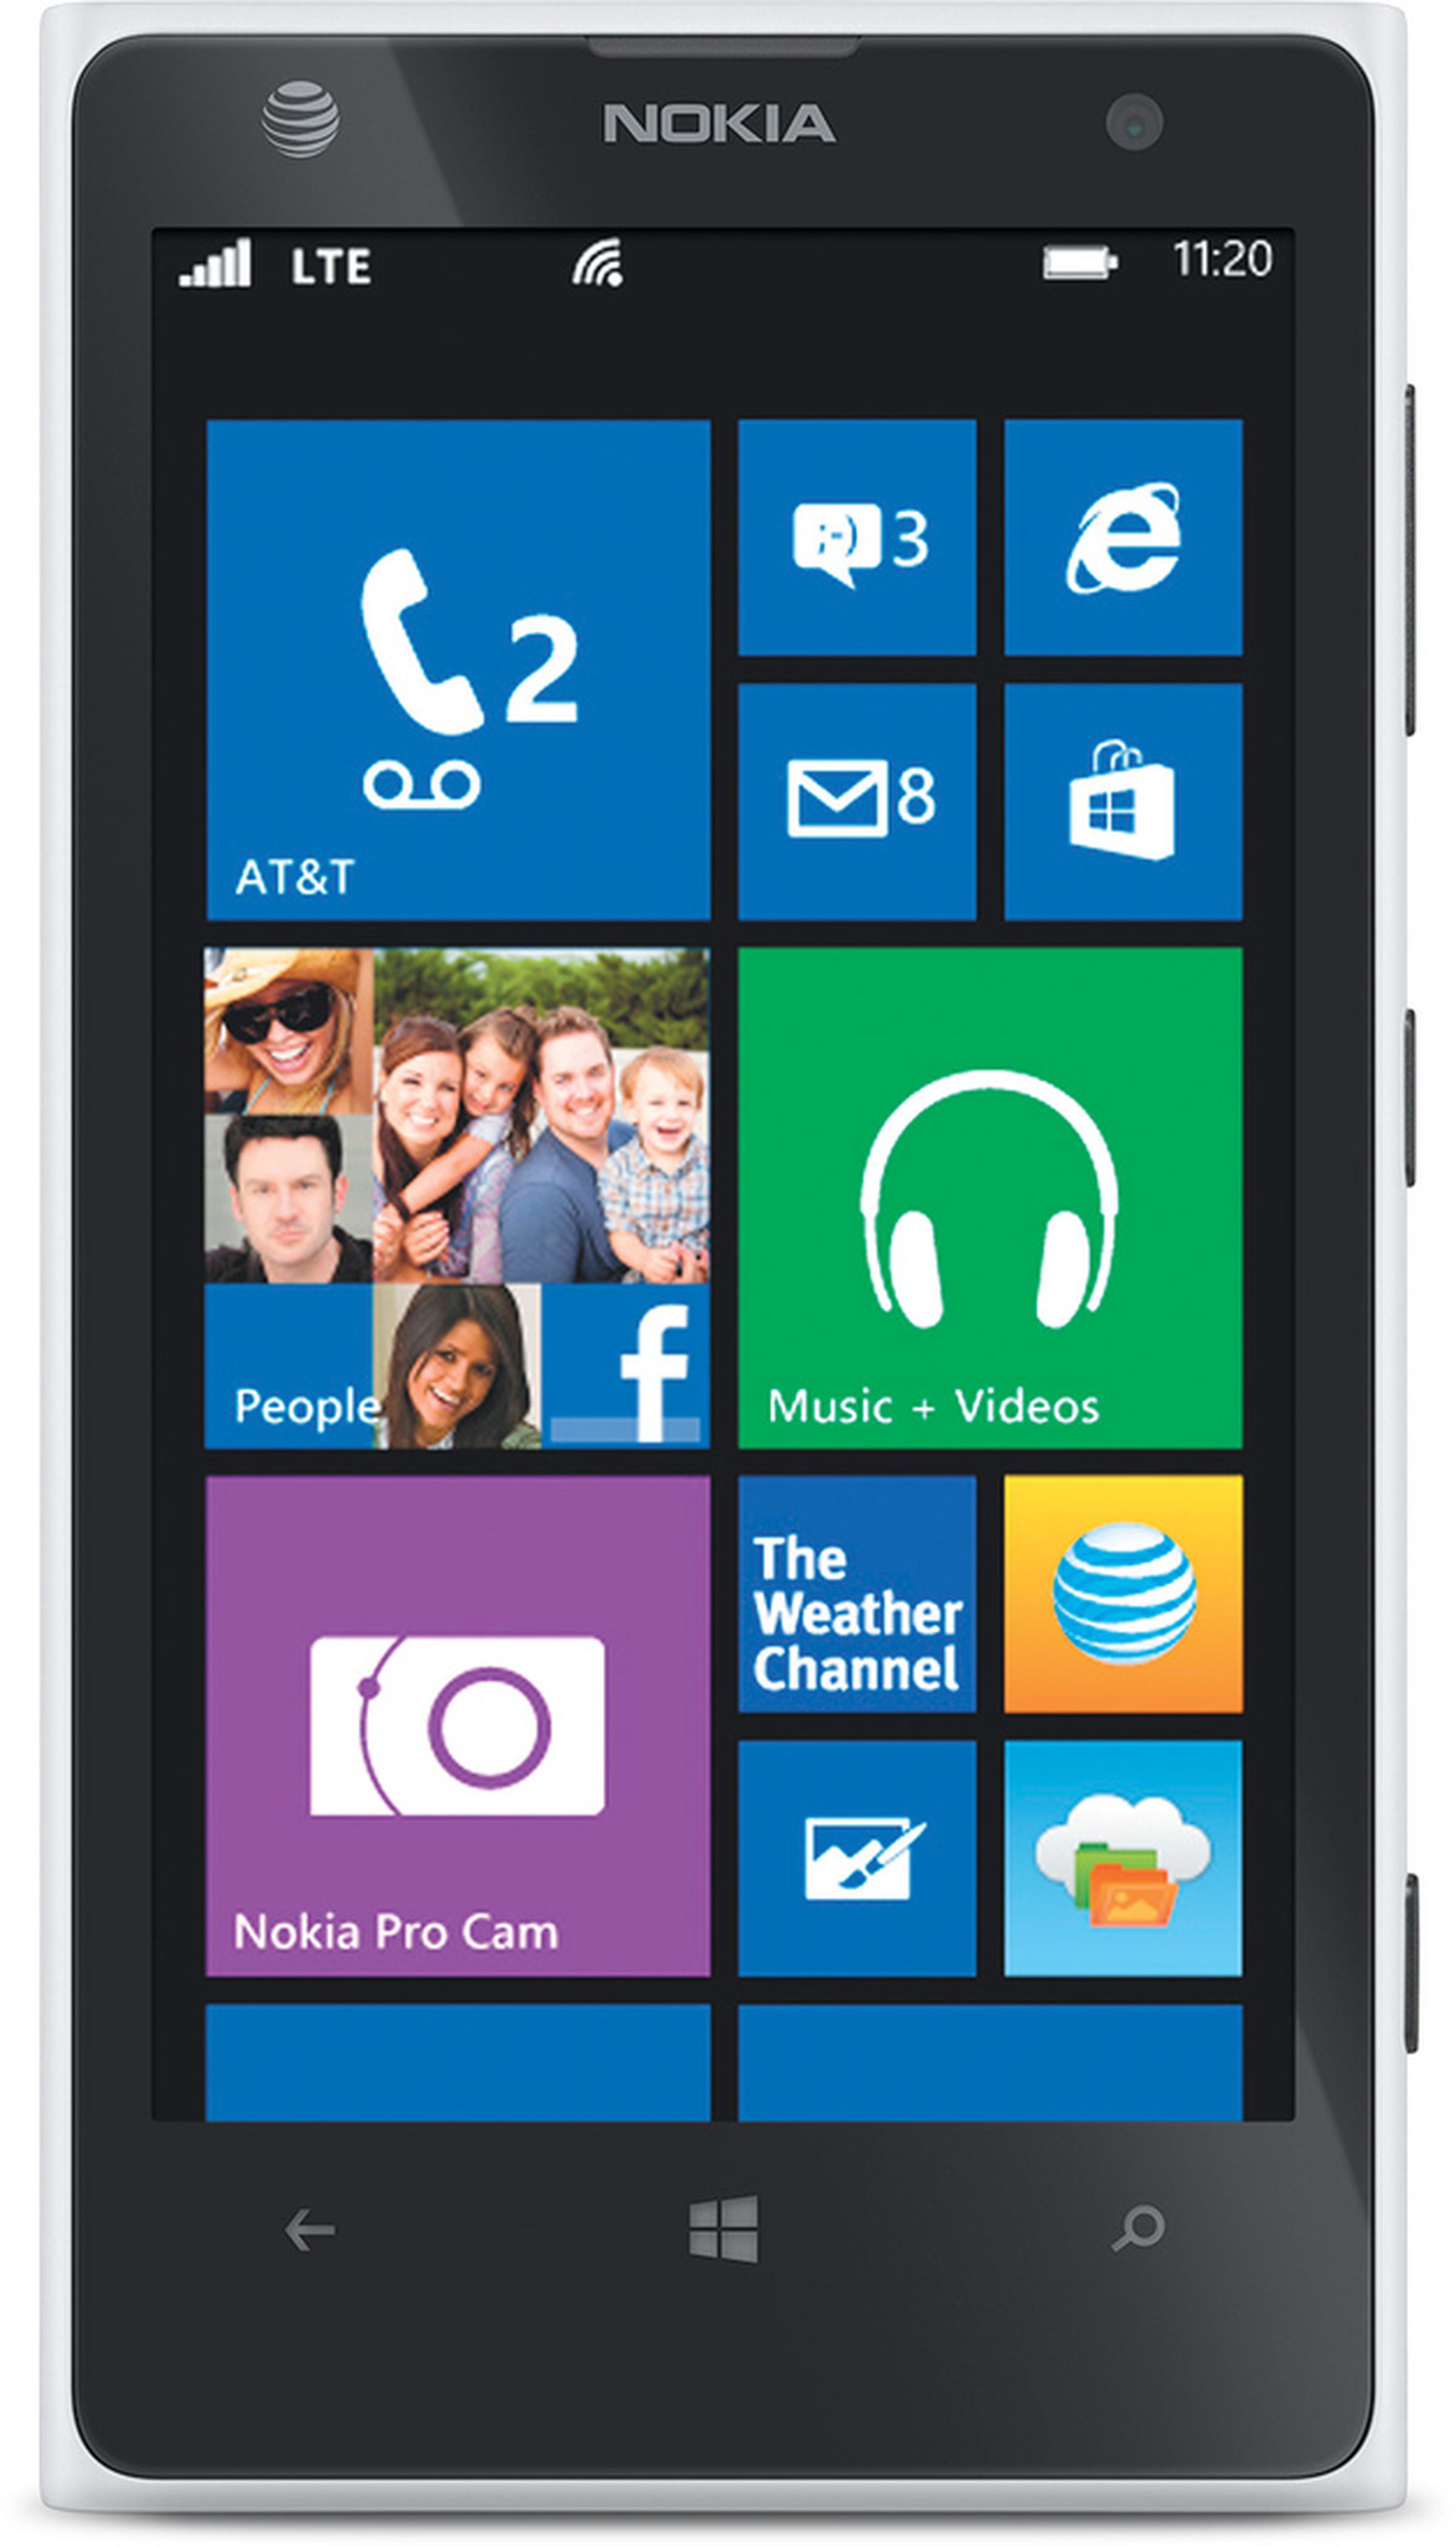 Nokia Lumia 1020 photos